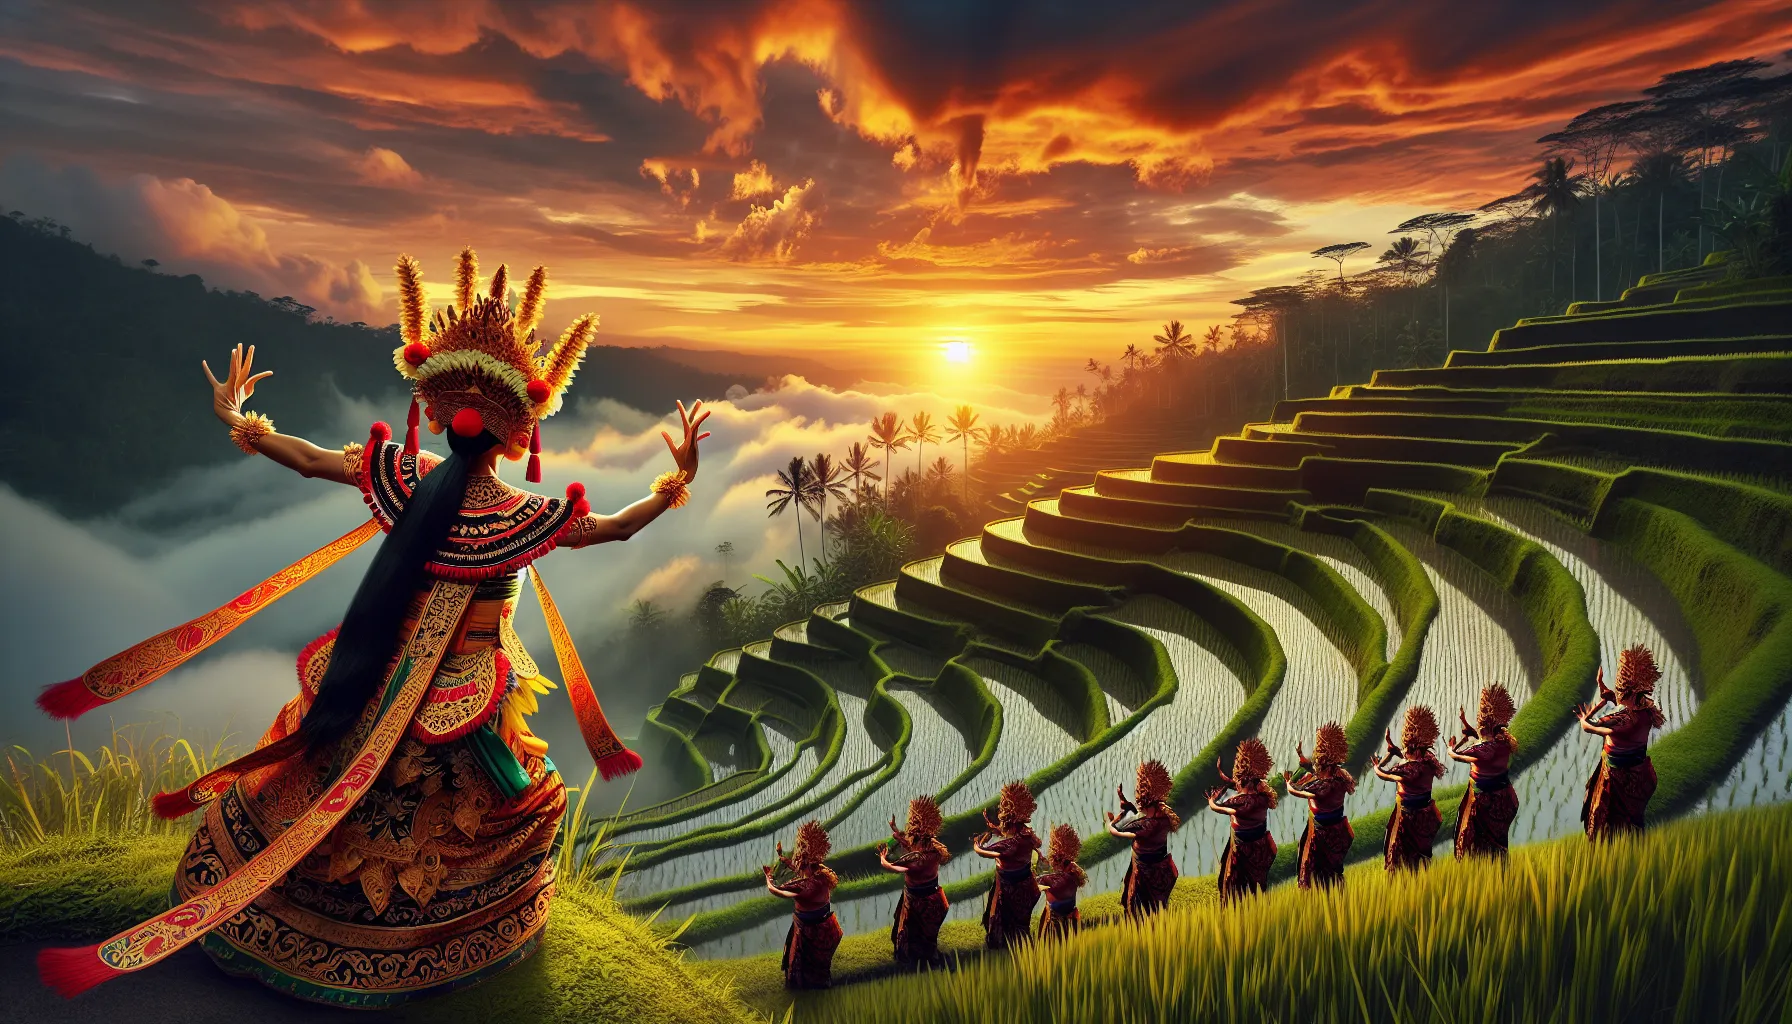 Bali, conhecida como a Ilha dos Deuses, é um destino mágico cheio de segredos e encantos. Se você tem apenas três dias para explorar esta ilha paradisíaca, aqui estão algumas dicas para descobrir os seus segredos mais profundos.

Dia 1: Templos e Espiritualidade
Comece o seu dia visitando o Templo Besakih, o maior e mais sagrado templo de